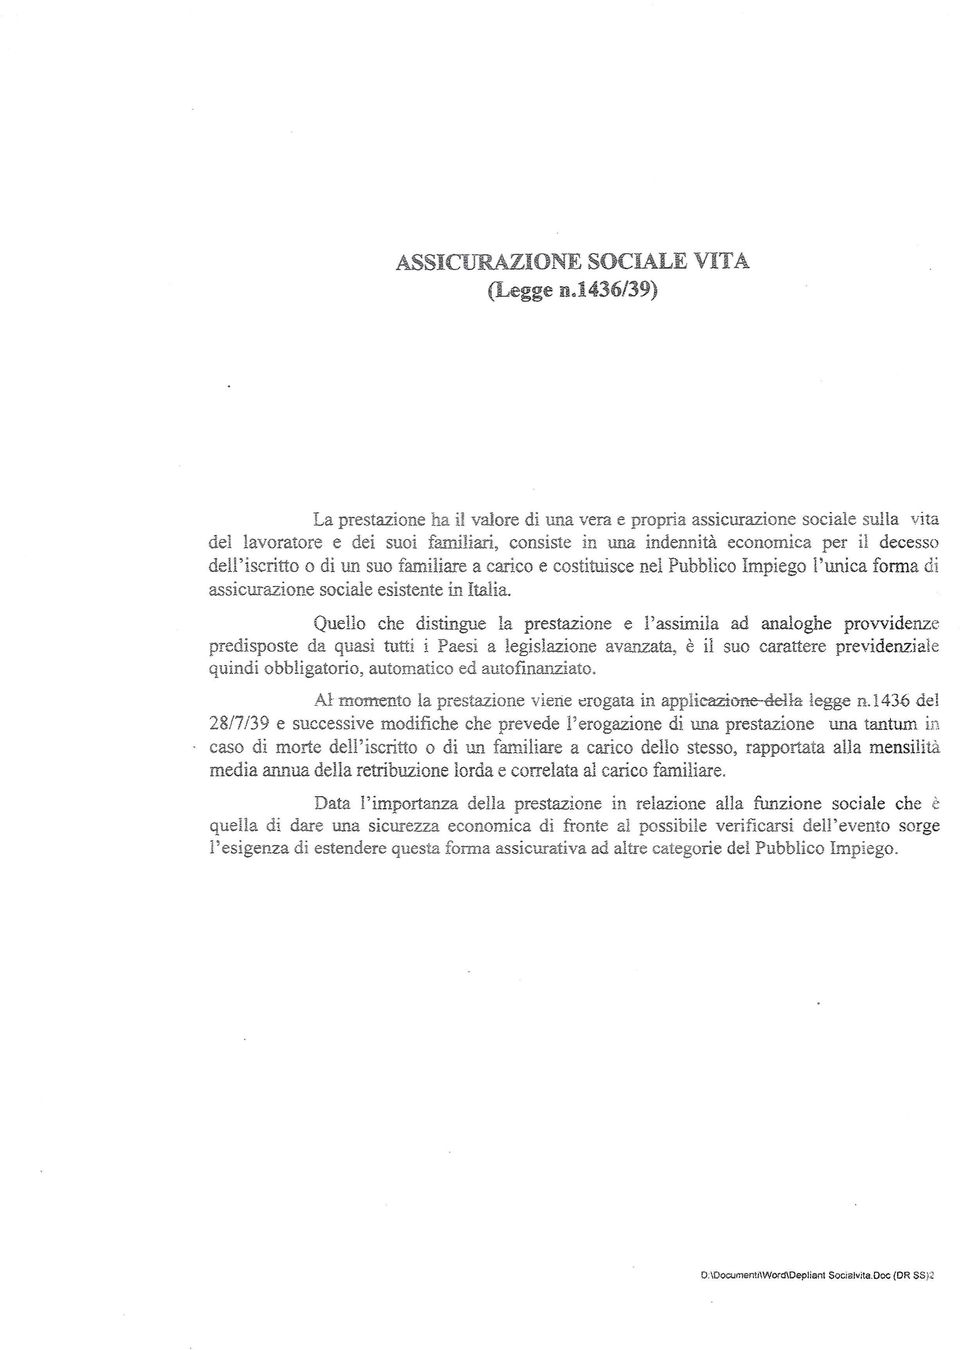 un suo familiare a carico e costituisce nel Pubblico Impiego l'unica forma di assicurazione sociale esistente in Italia.